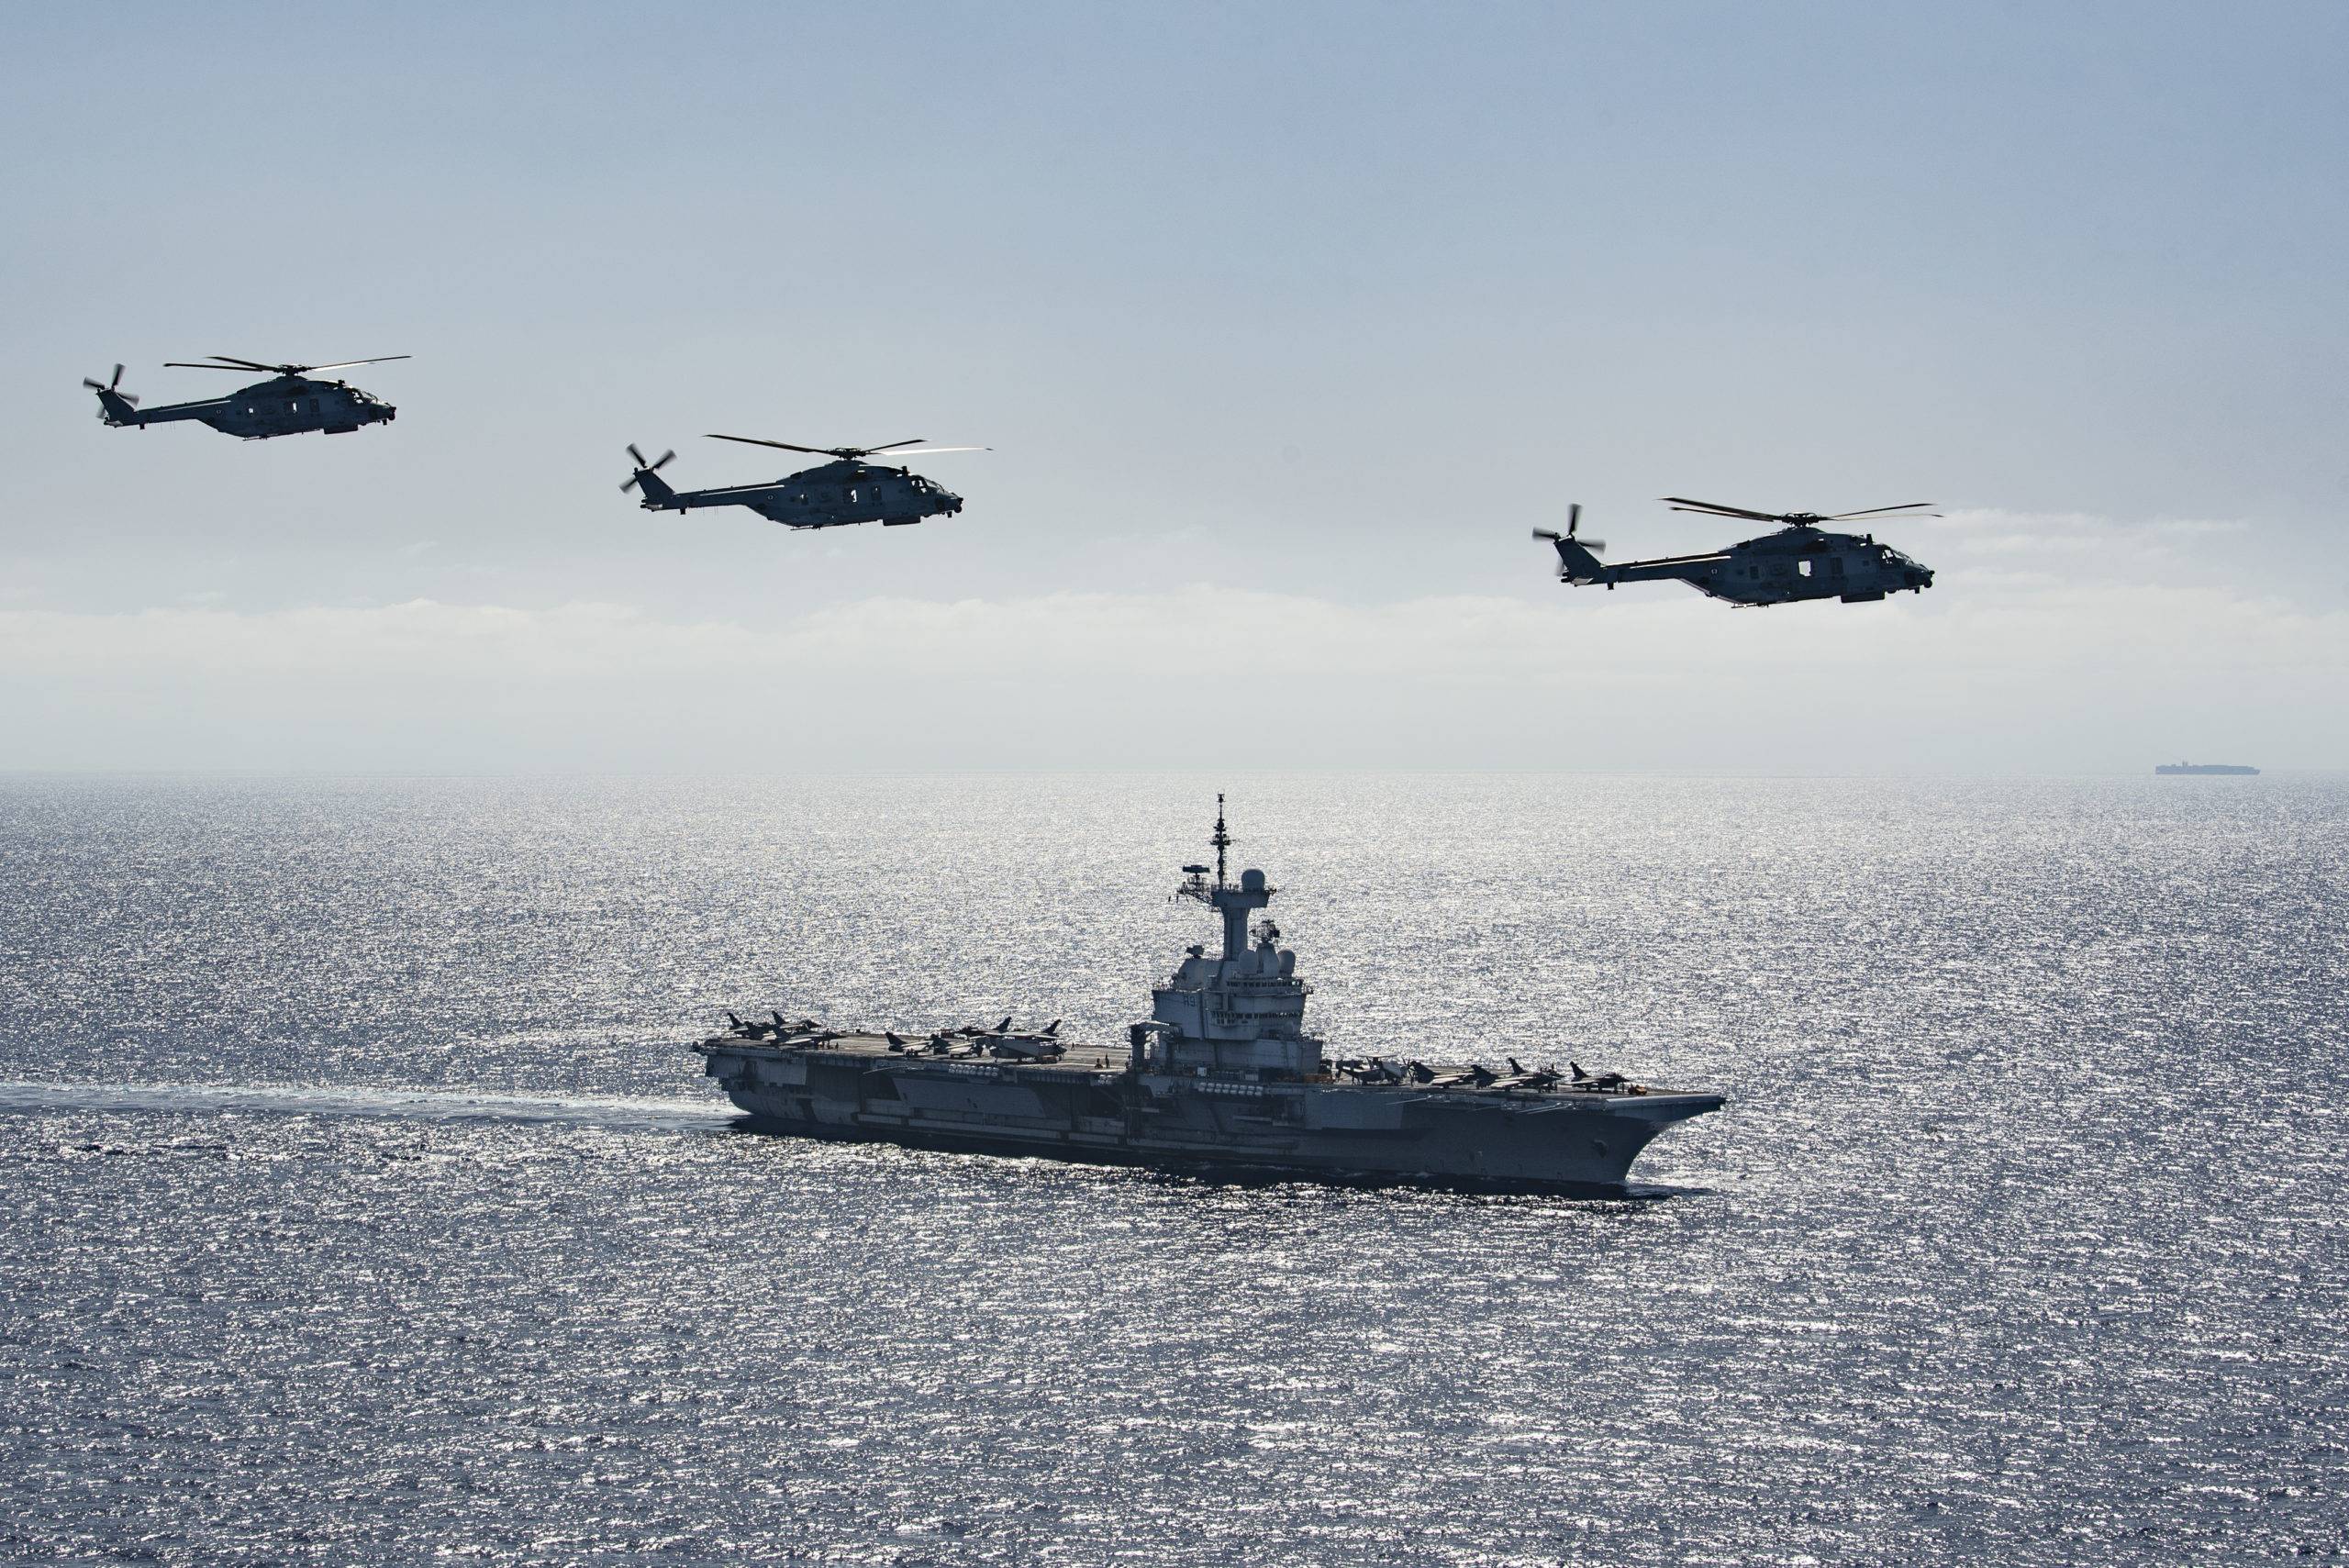 Photex avec 3 NH-90 Caïman Marine de la flottille 31F lors de la mission CLEMENCEAU 21 au-dessus du porte-avions Charles de Gaulle, le vendredi 21 mai 2021, en mer Méditerranée.